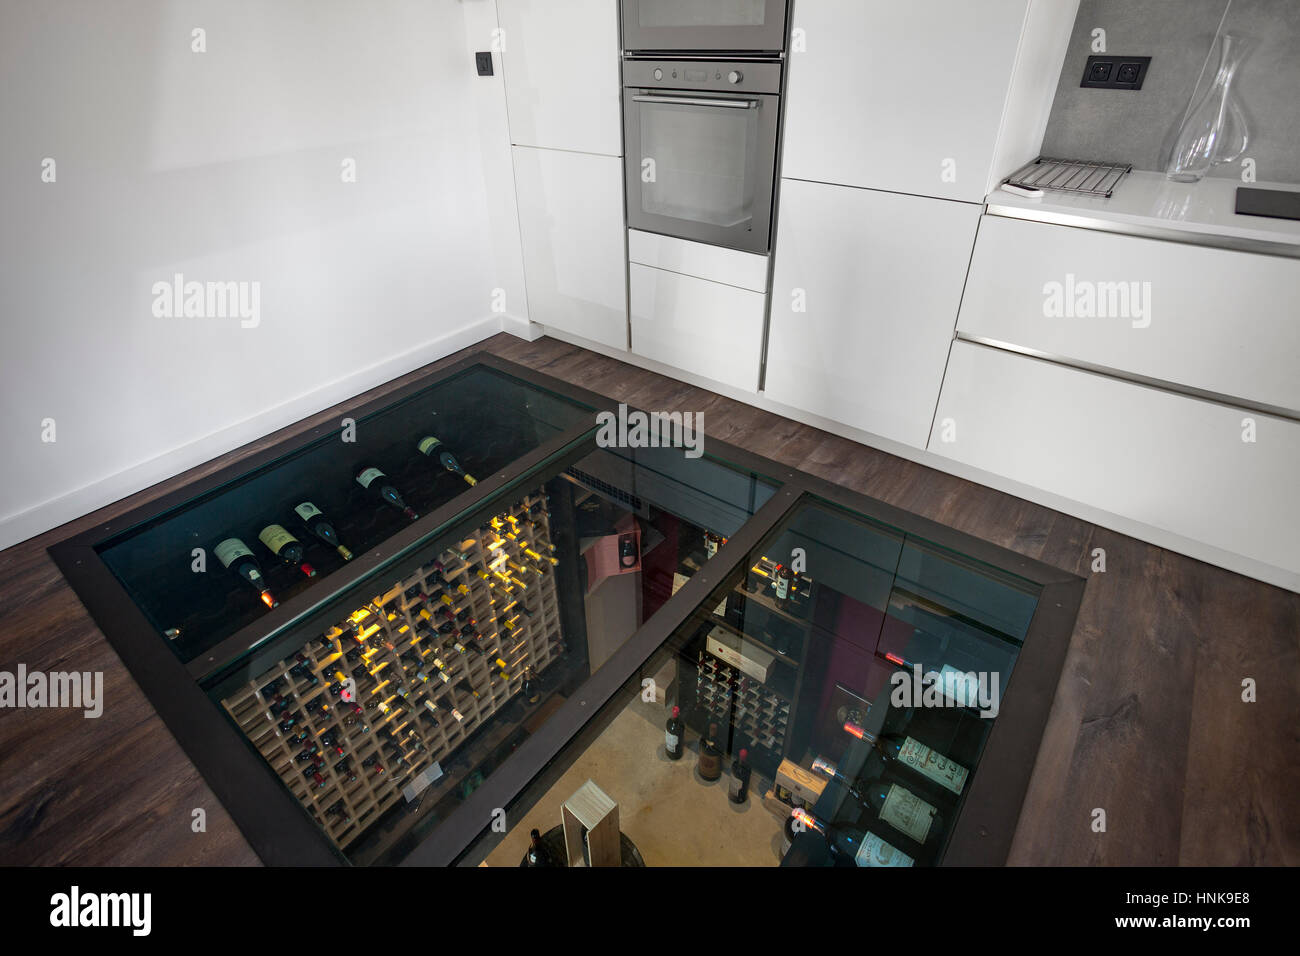 Residenziale cantina di vini. Un frigorifero personale wine room, il soffitto di vetro del quale essendo infatti il pavimento della cucina in cima. Wine Room. Foto Stock